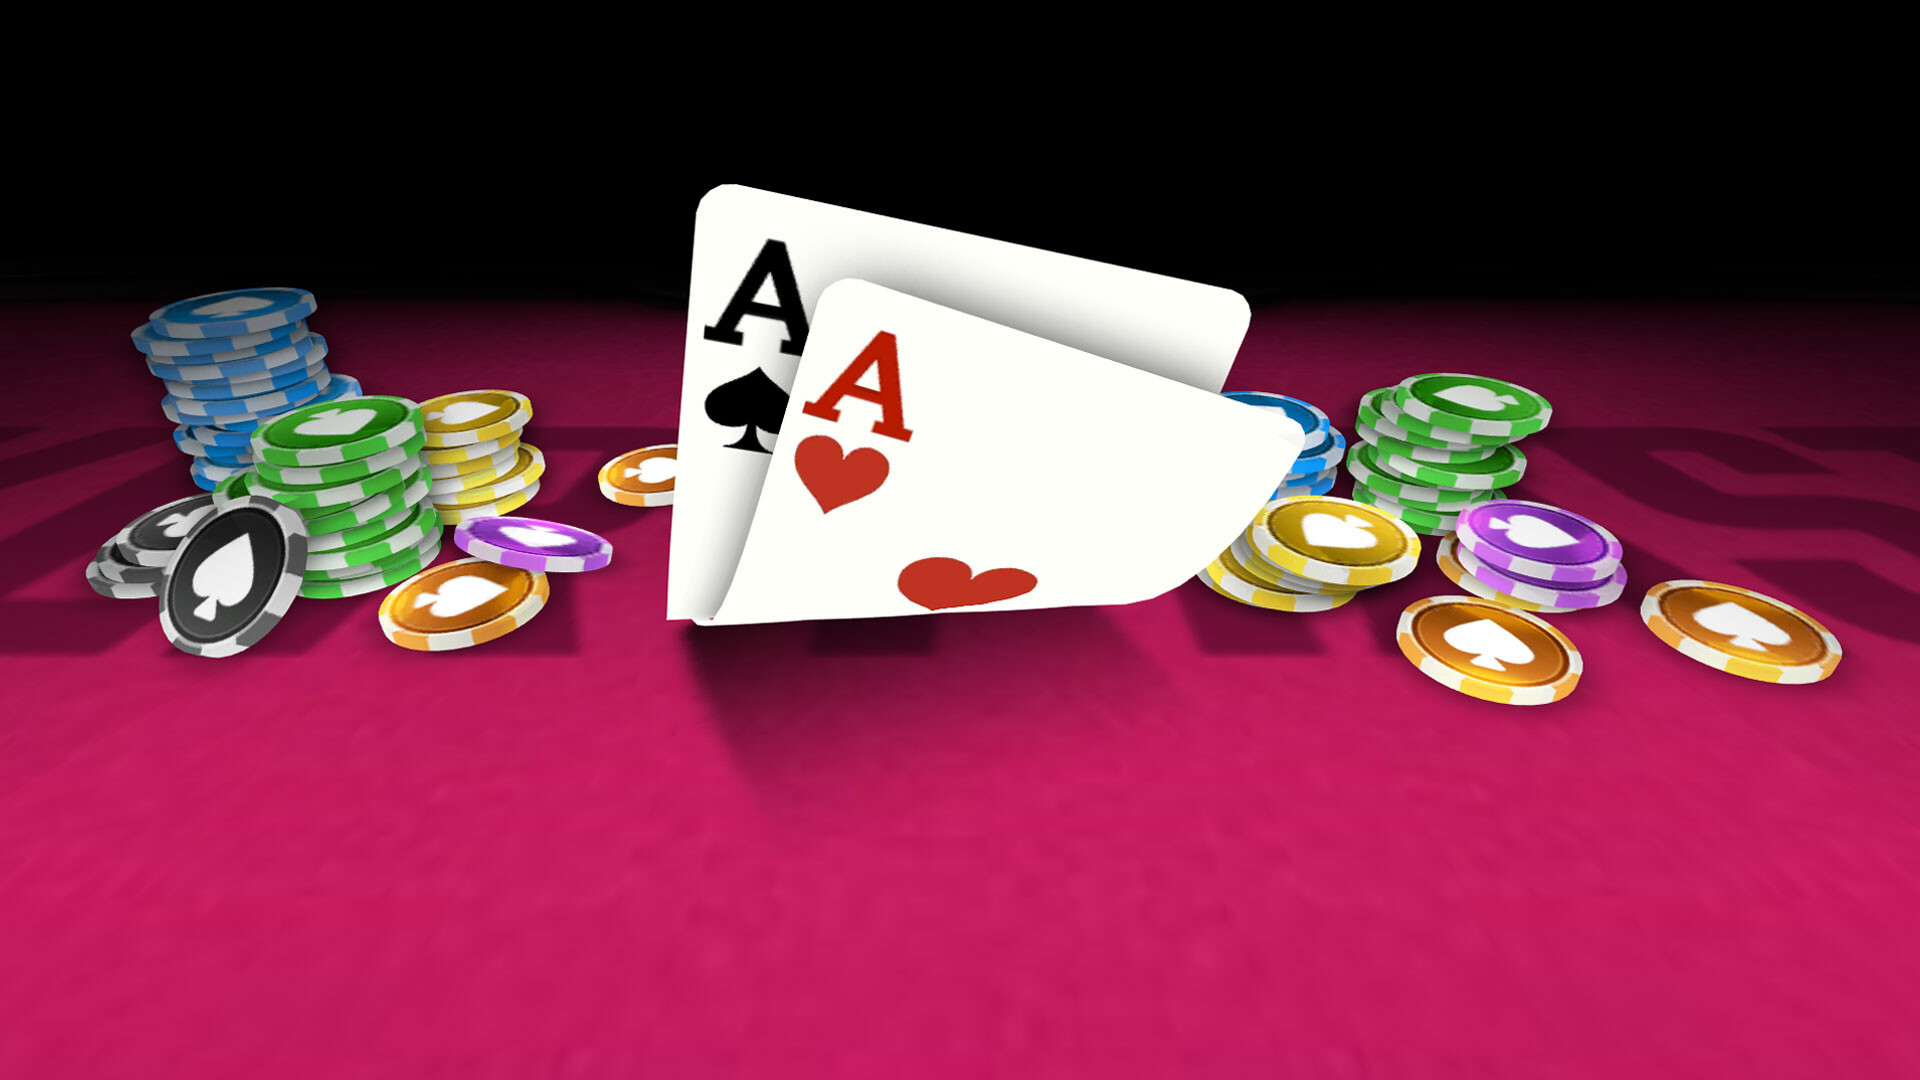 Jogue 6+ Short Deck Poker Jogos Online